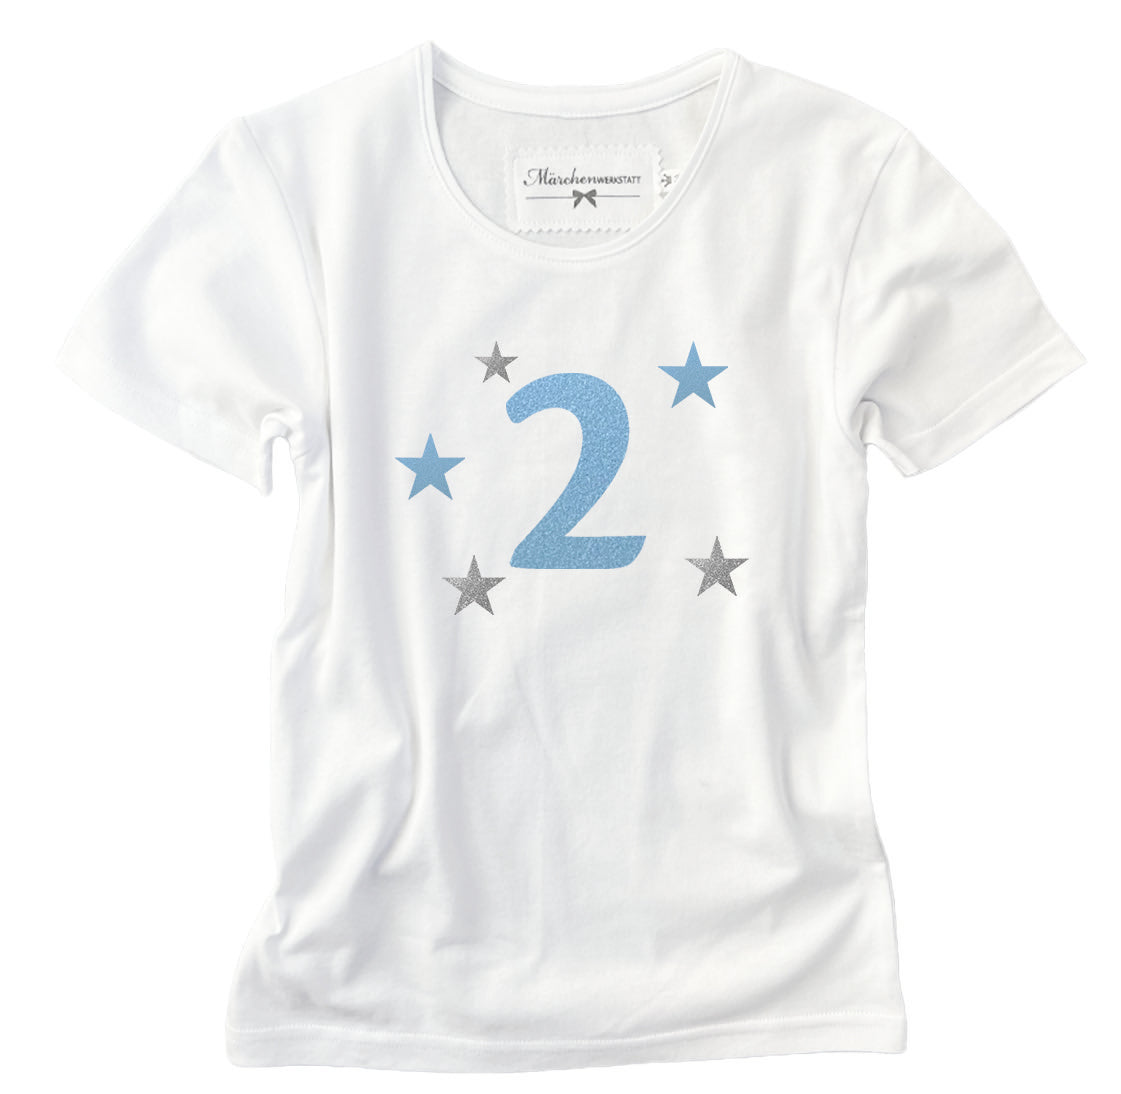 Geburtstags T-Shirt mit der Zahl 2 in hellblau und silbernen Sternen. Ein wunderbares Geschenk für kleine Jungs zum 2. Geburtstag.